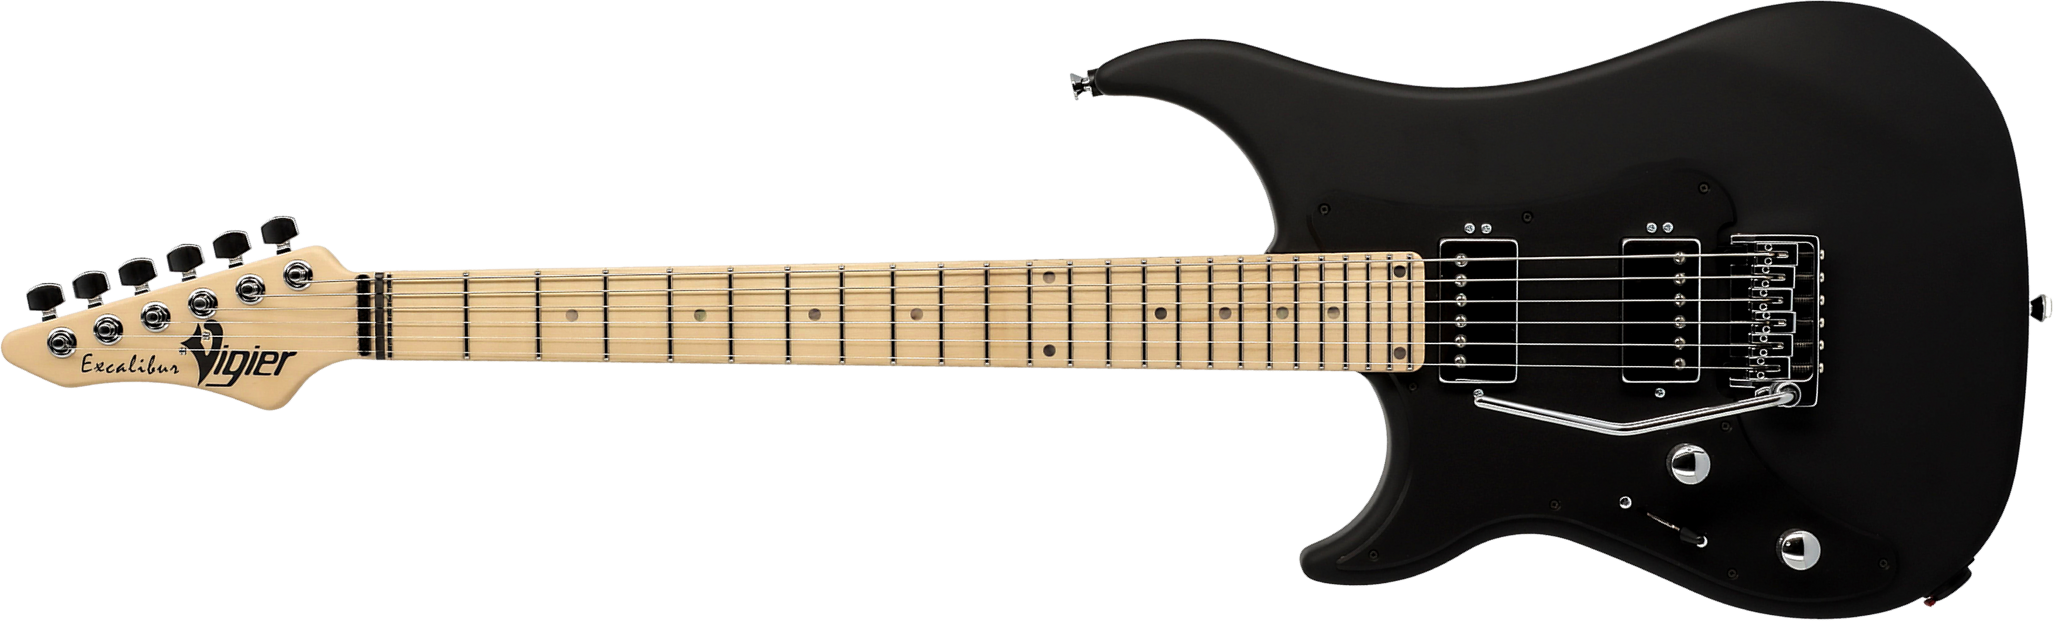 Vigier Excalibur Indus Lh Gaucher 2h Trem Mn - Textured Black - E-Gitarre für Linkshänder - Main picture